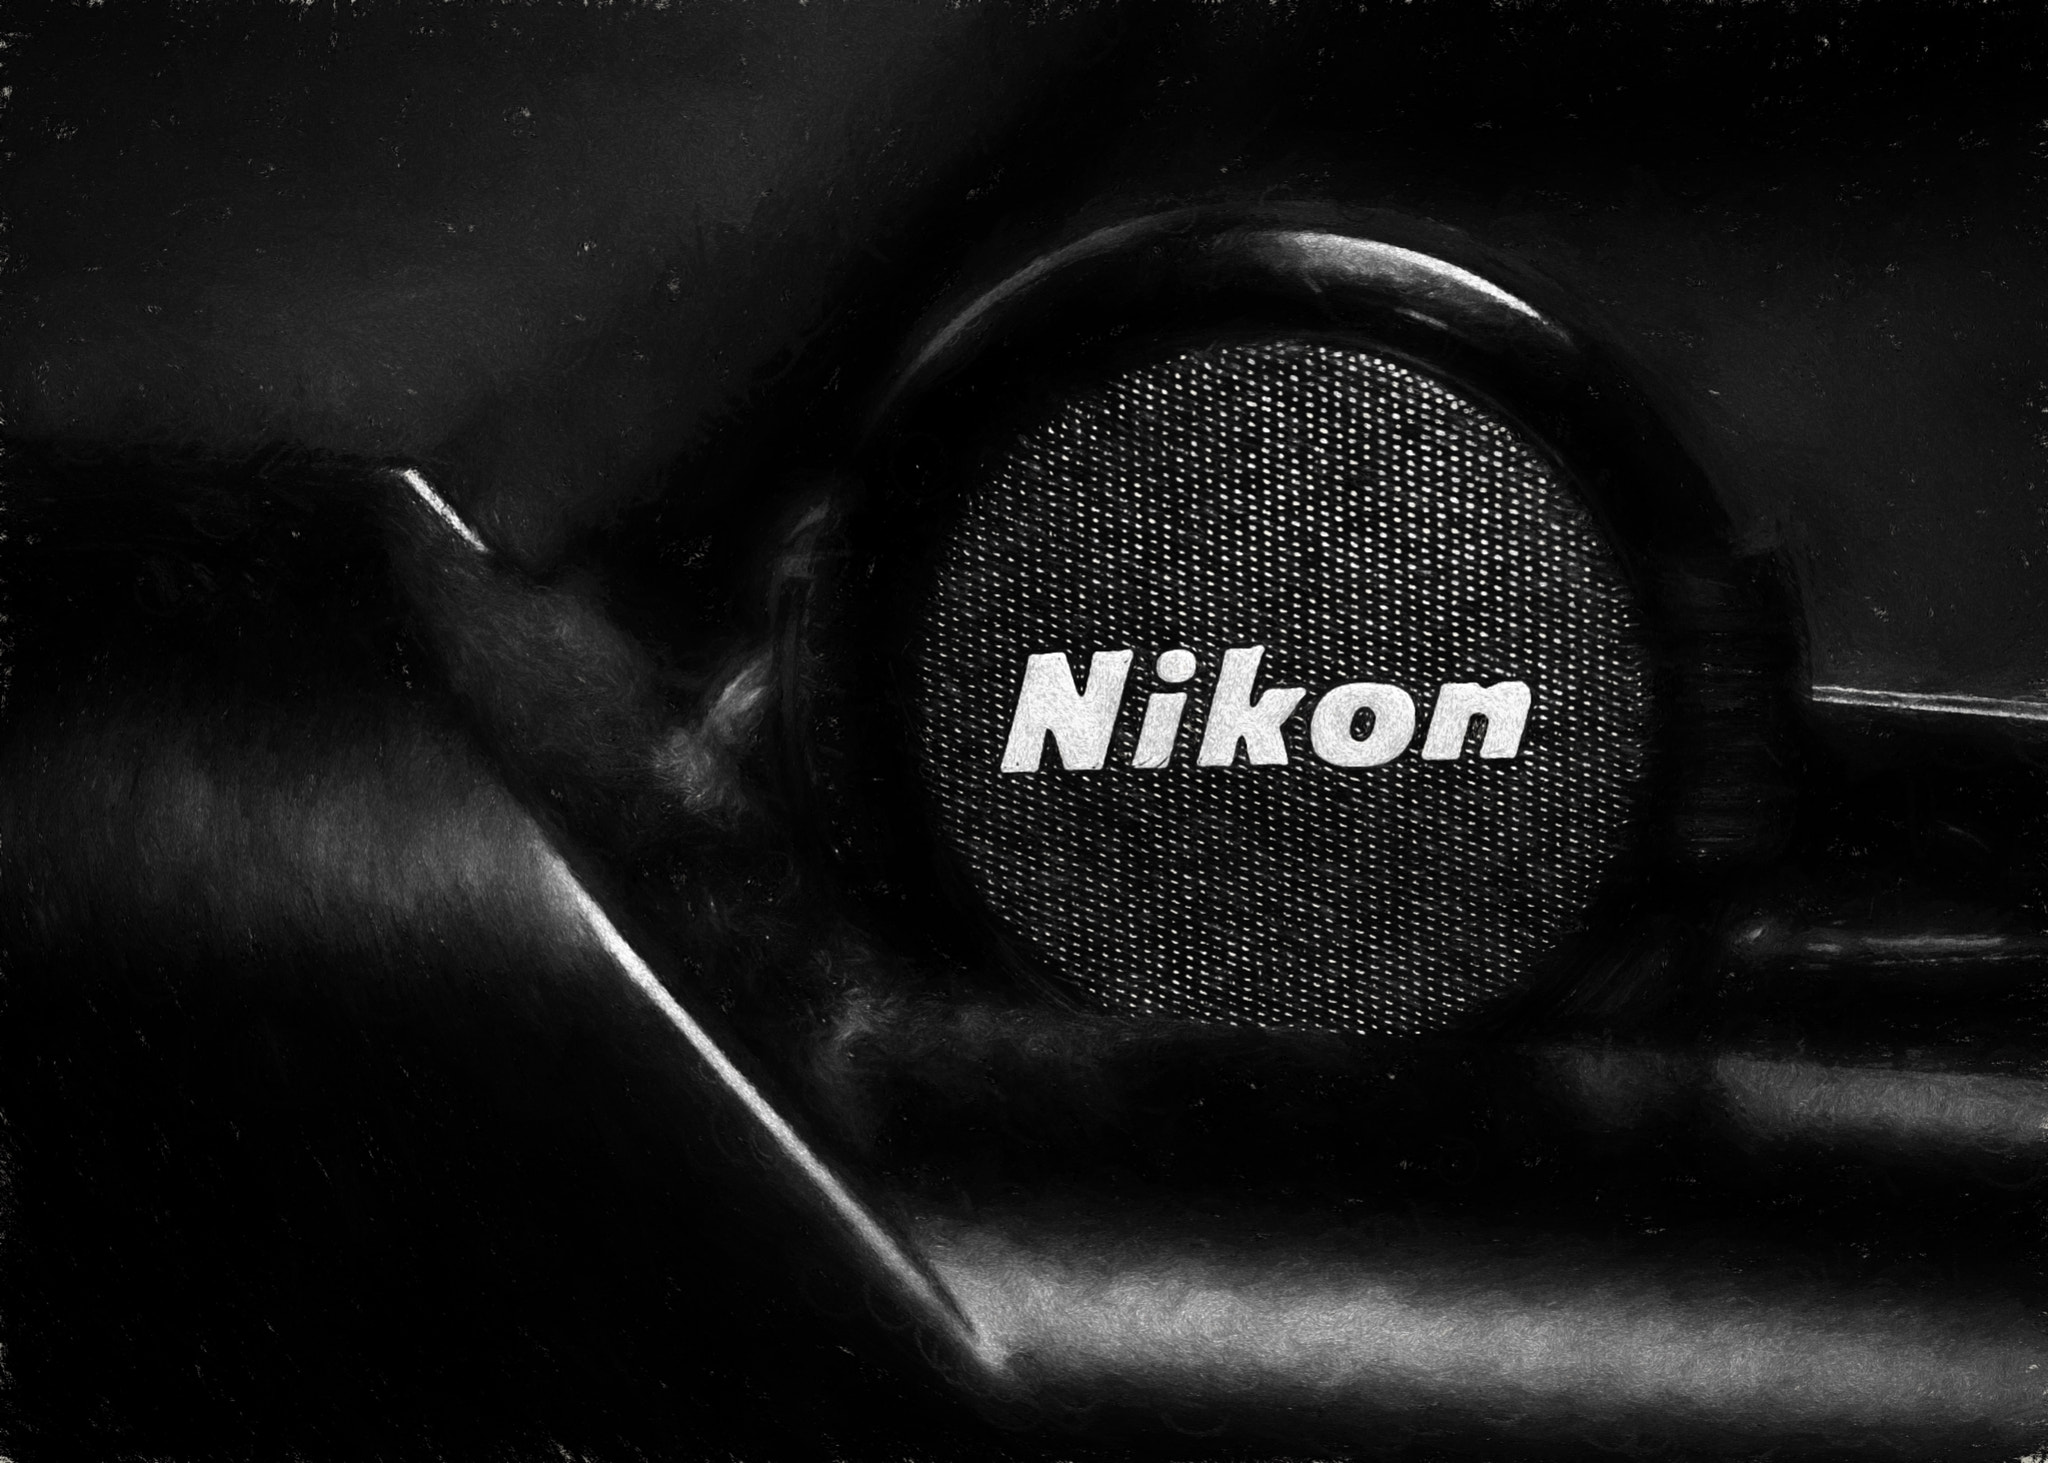 Nikon D7000 + AF Nikkor 50mm f/1.4 sample photo. Nikon photography